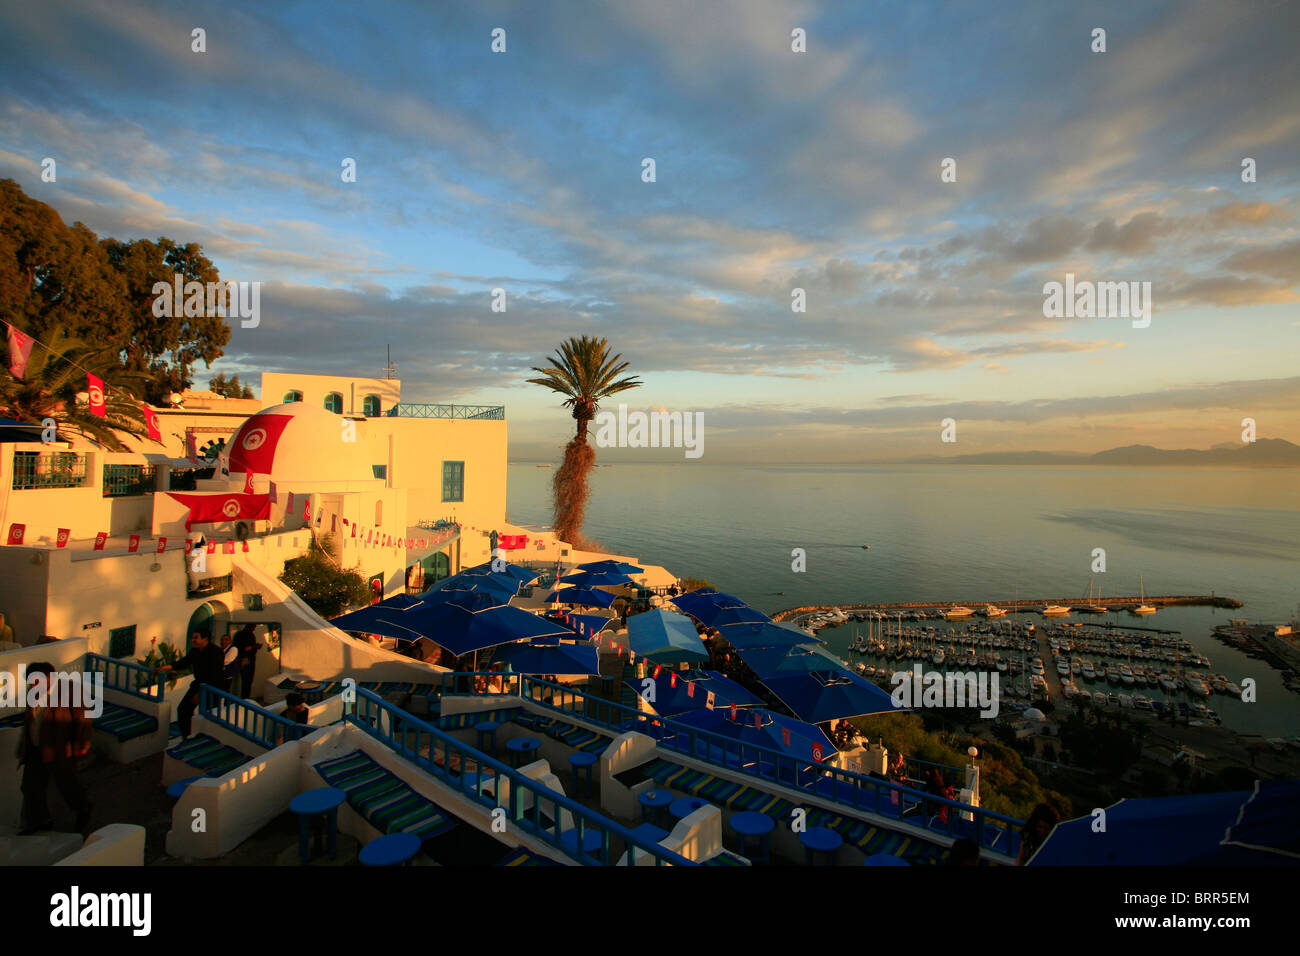 Sonnenuntergang in einem Café im gehobenen Stadtteil Sidi Bou Said, eine Klippe Dorf beliebt bei Touristen in der Nähe der Hauptstadt Tunis. Stockfoto